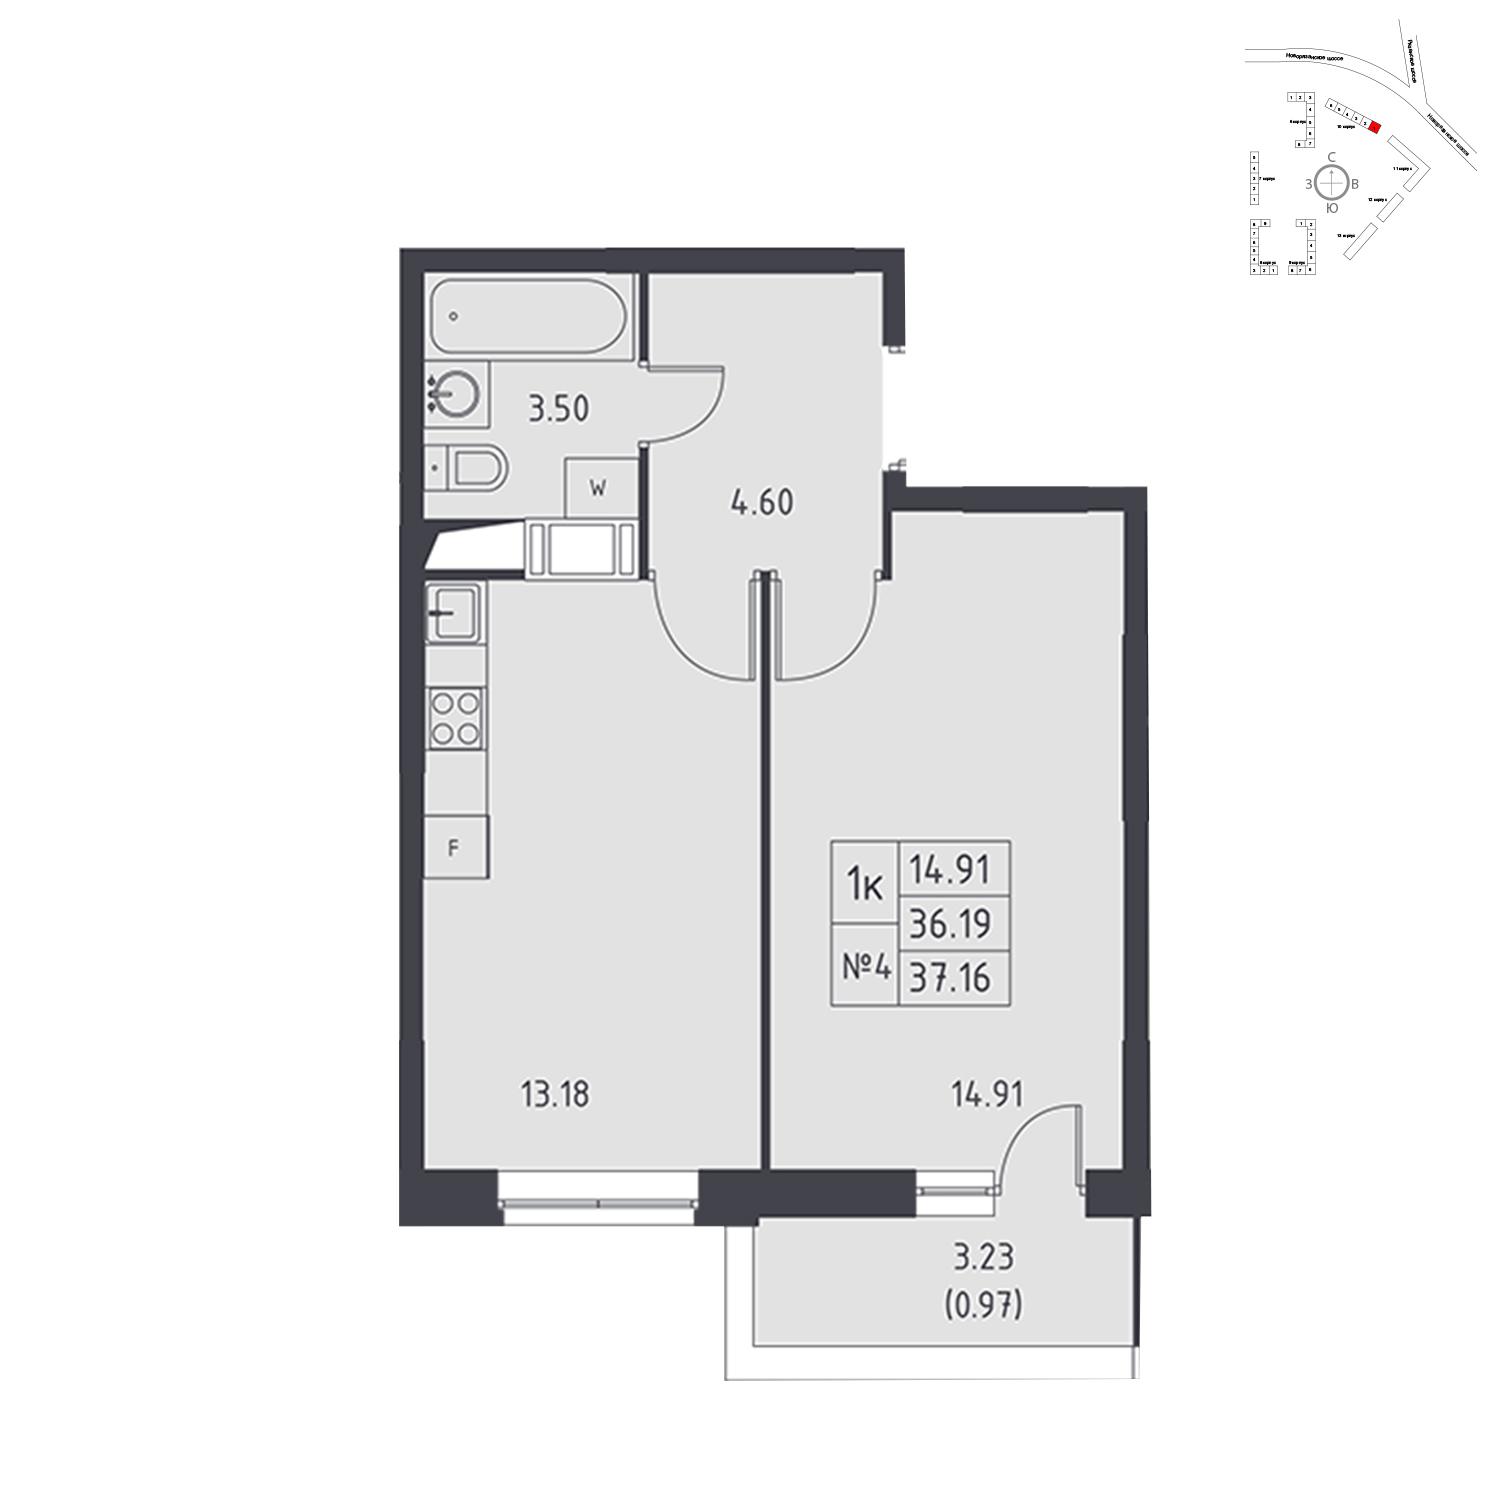 Продаётся 1-комнатная квартира в новостройке 37.2 кв.м. этаж 16/17 за 4 211 067 руб 